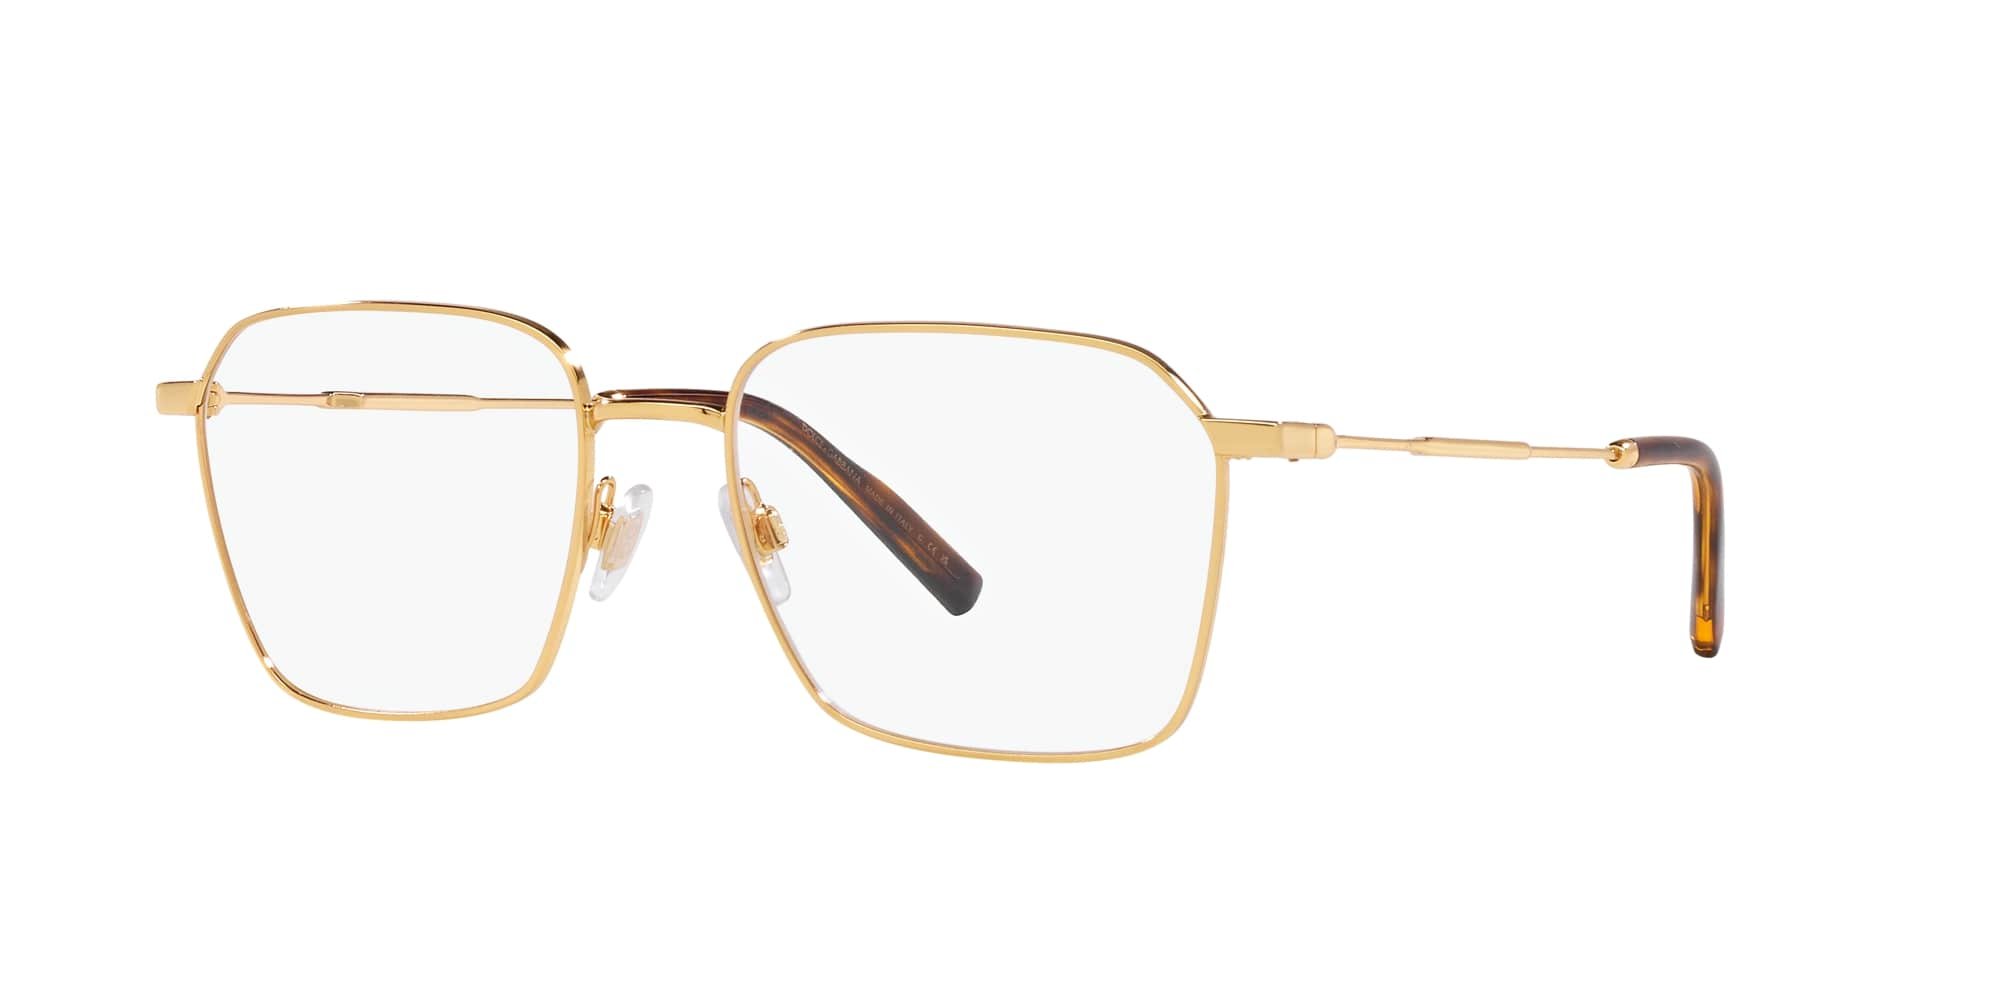 Das Bild zeigt die Korrektionsbrille DG1350 02 von der Marke D&G in gold.